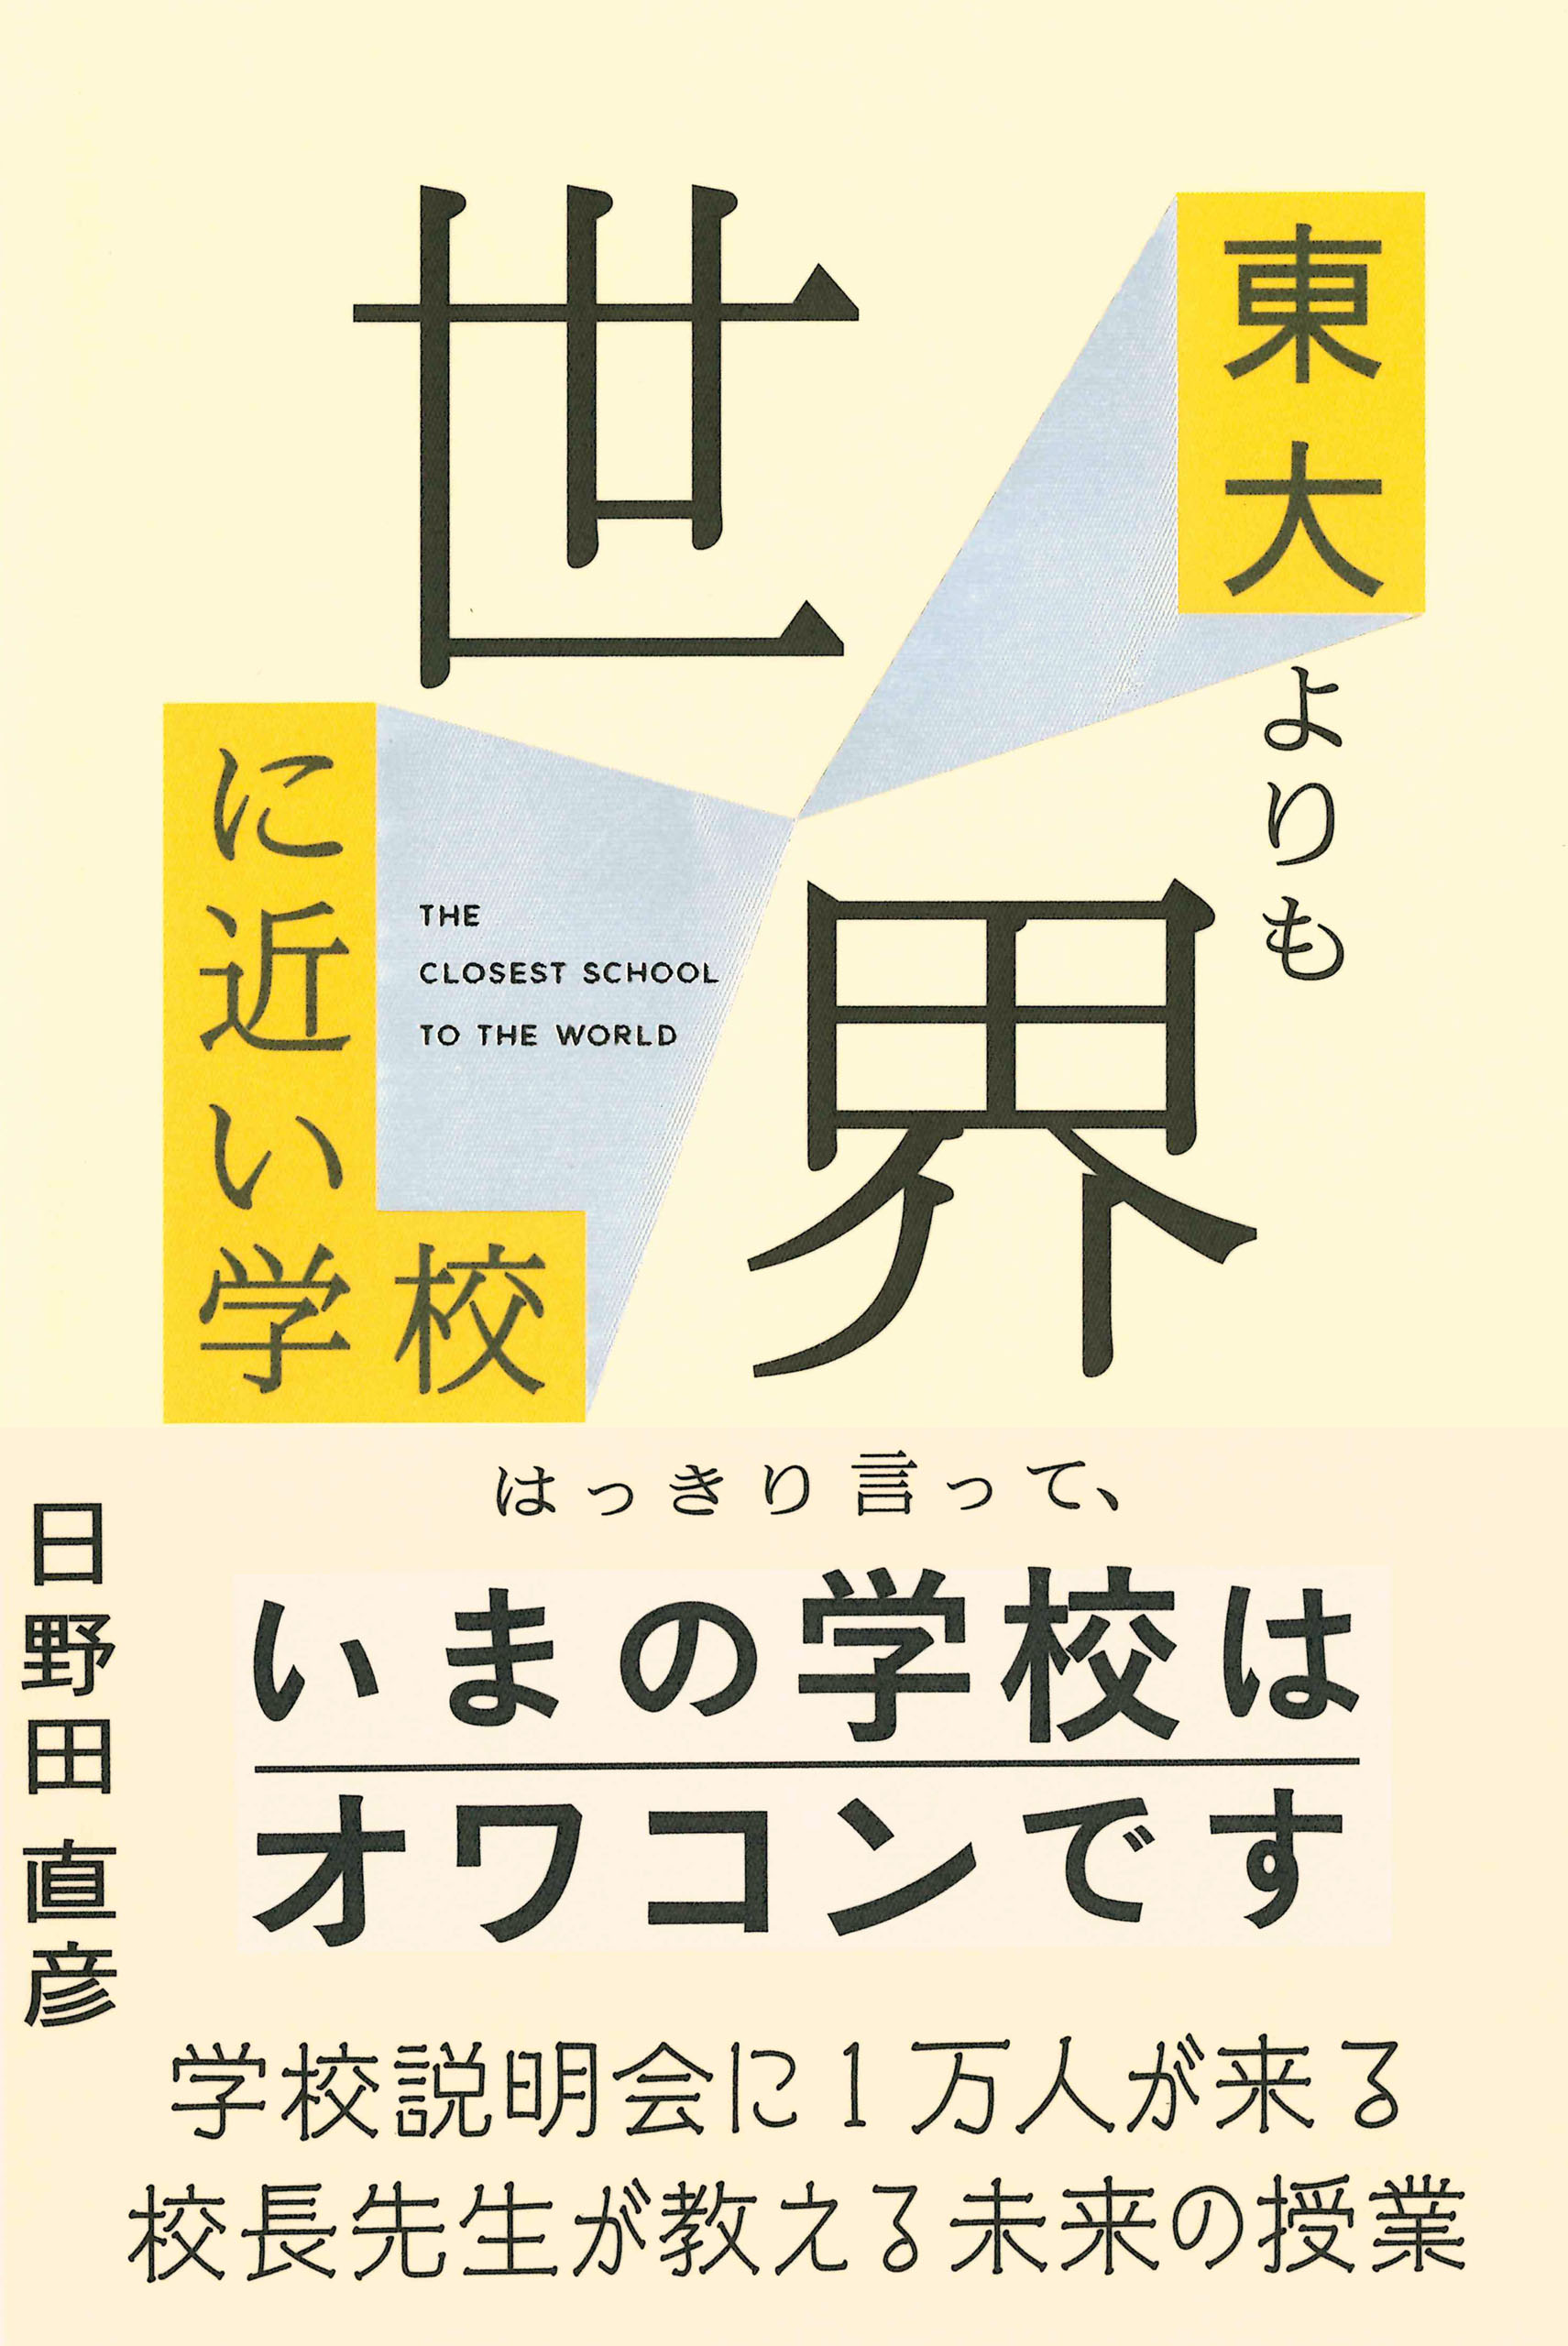 9/13（水）日野田直彦『東大よりも世界に近い学校』刊行記念トークイベントを開催します。